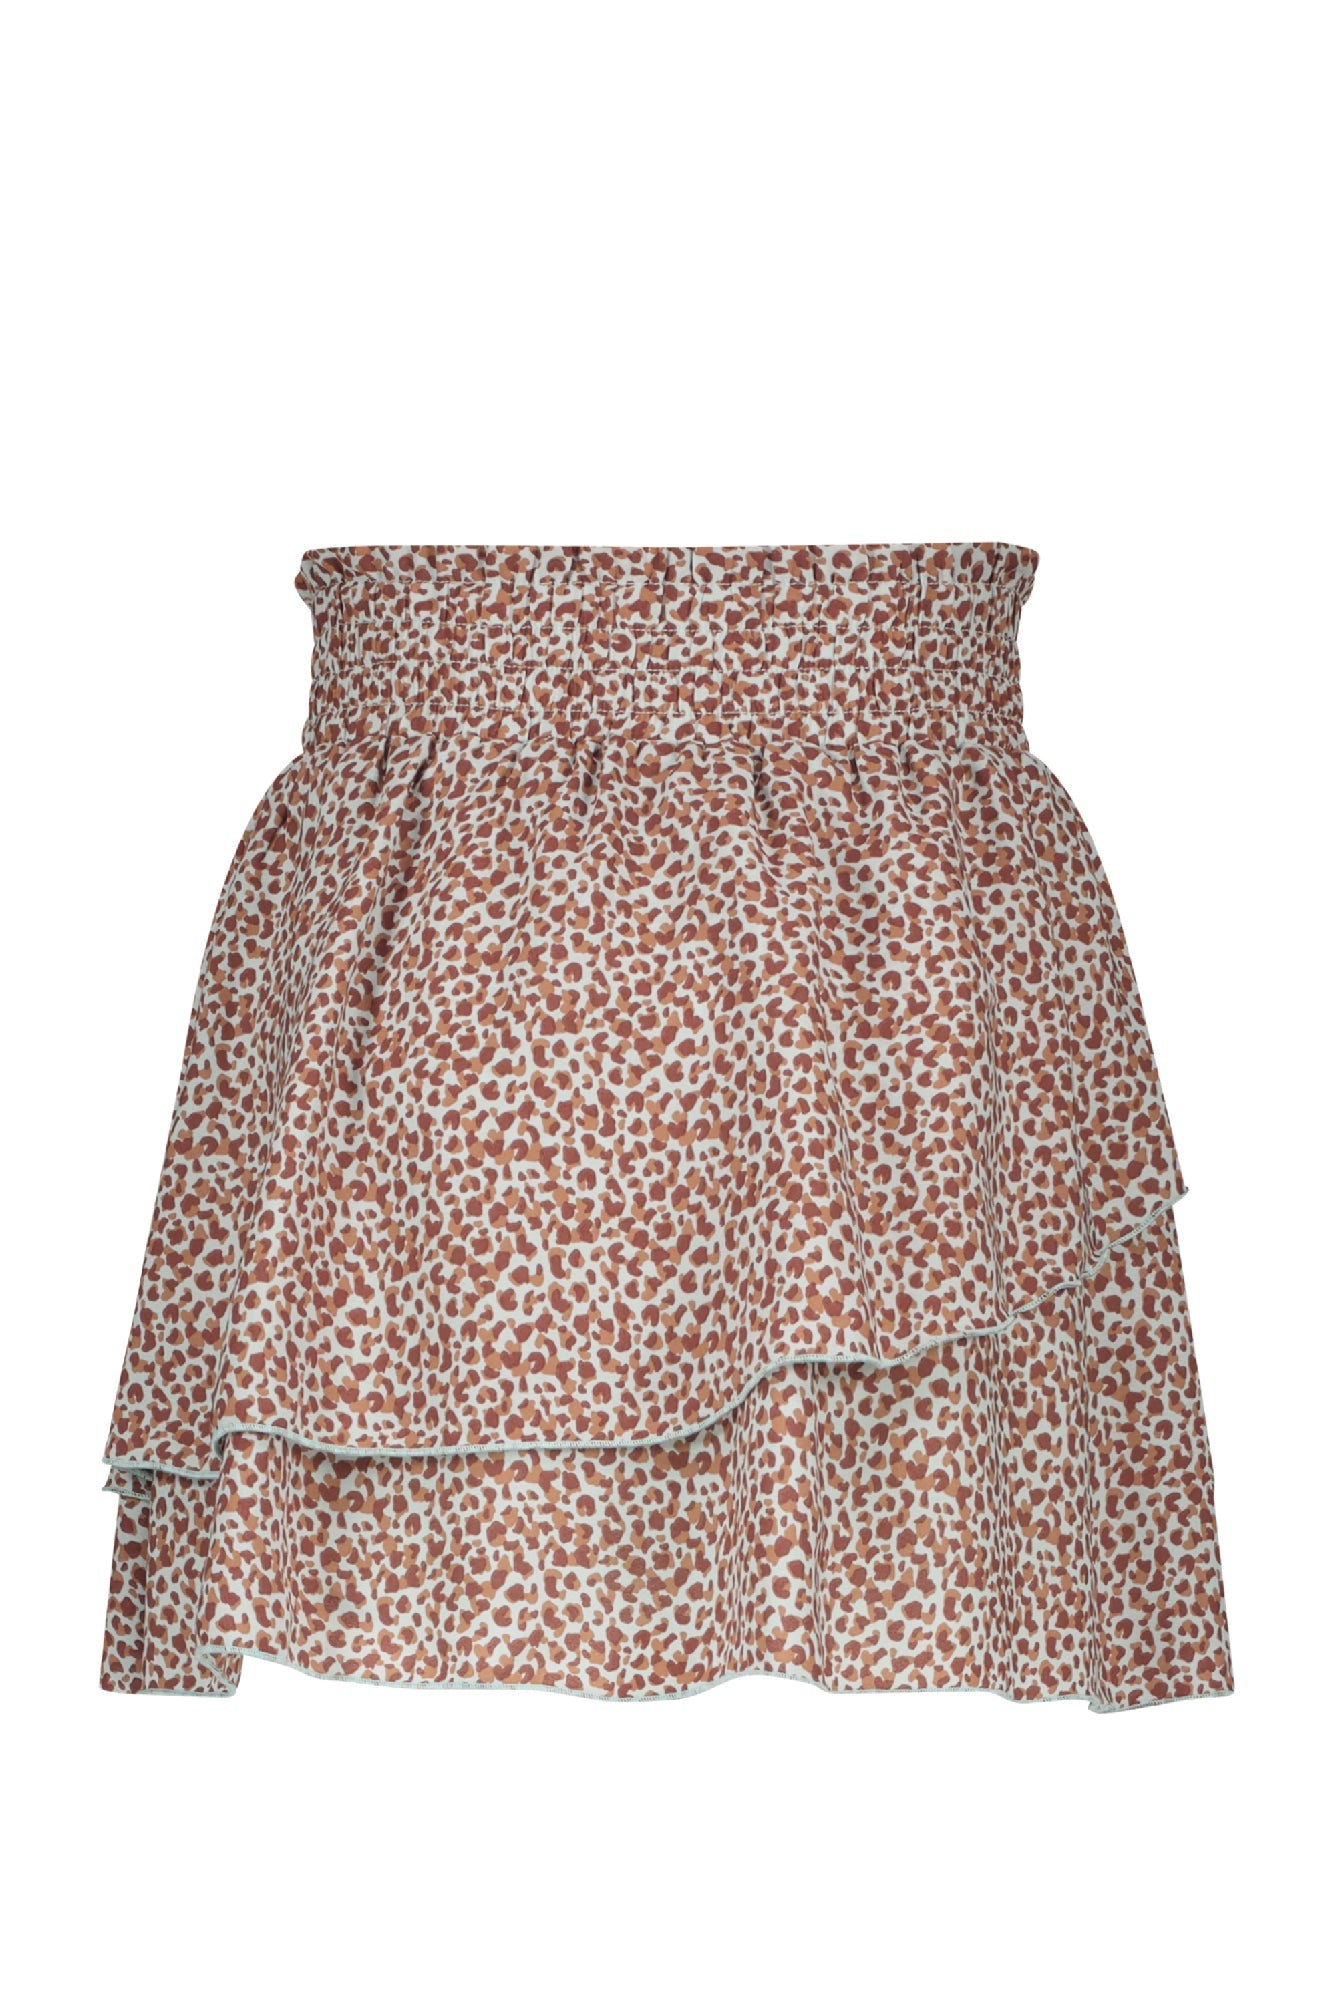 Meisjes Nada short layered skirt with short lining van NoBell in de kleur Spa Blue in maat 170-176.